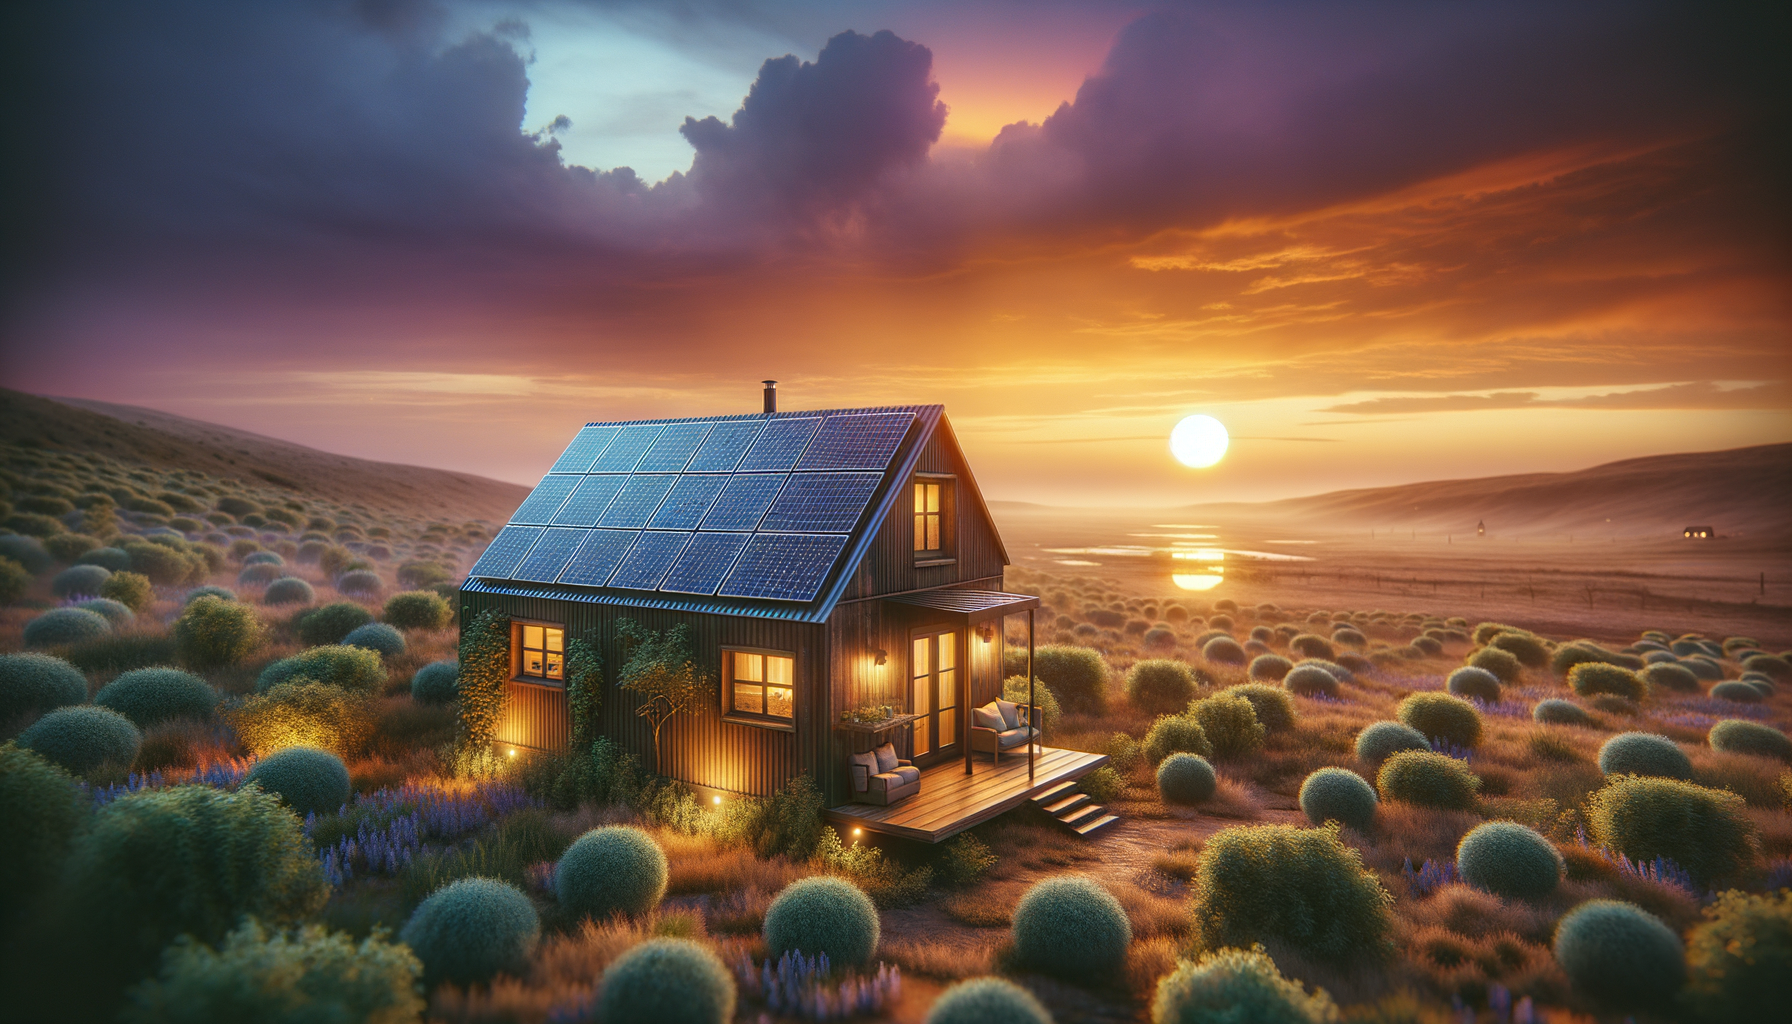 ALT: Tiny house enjoying sustainable solar energy